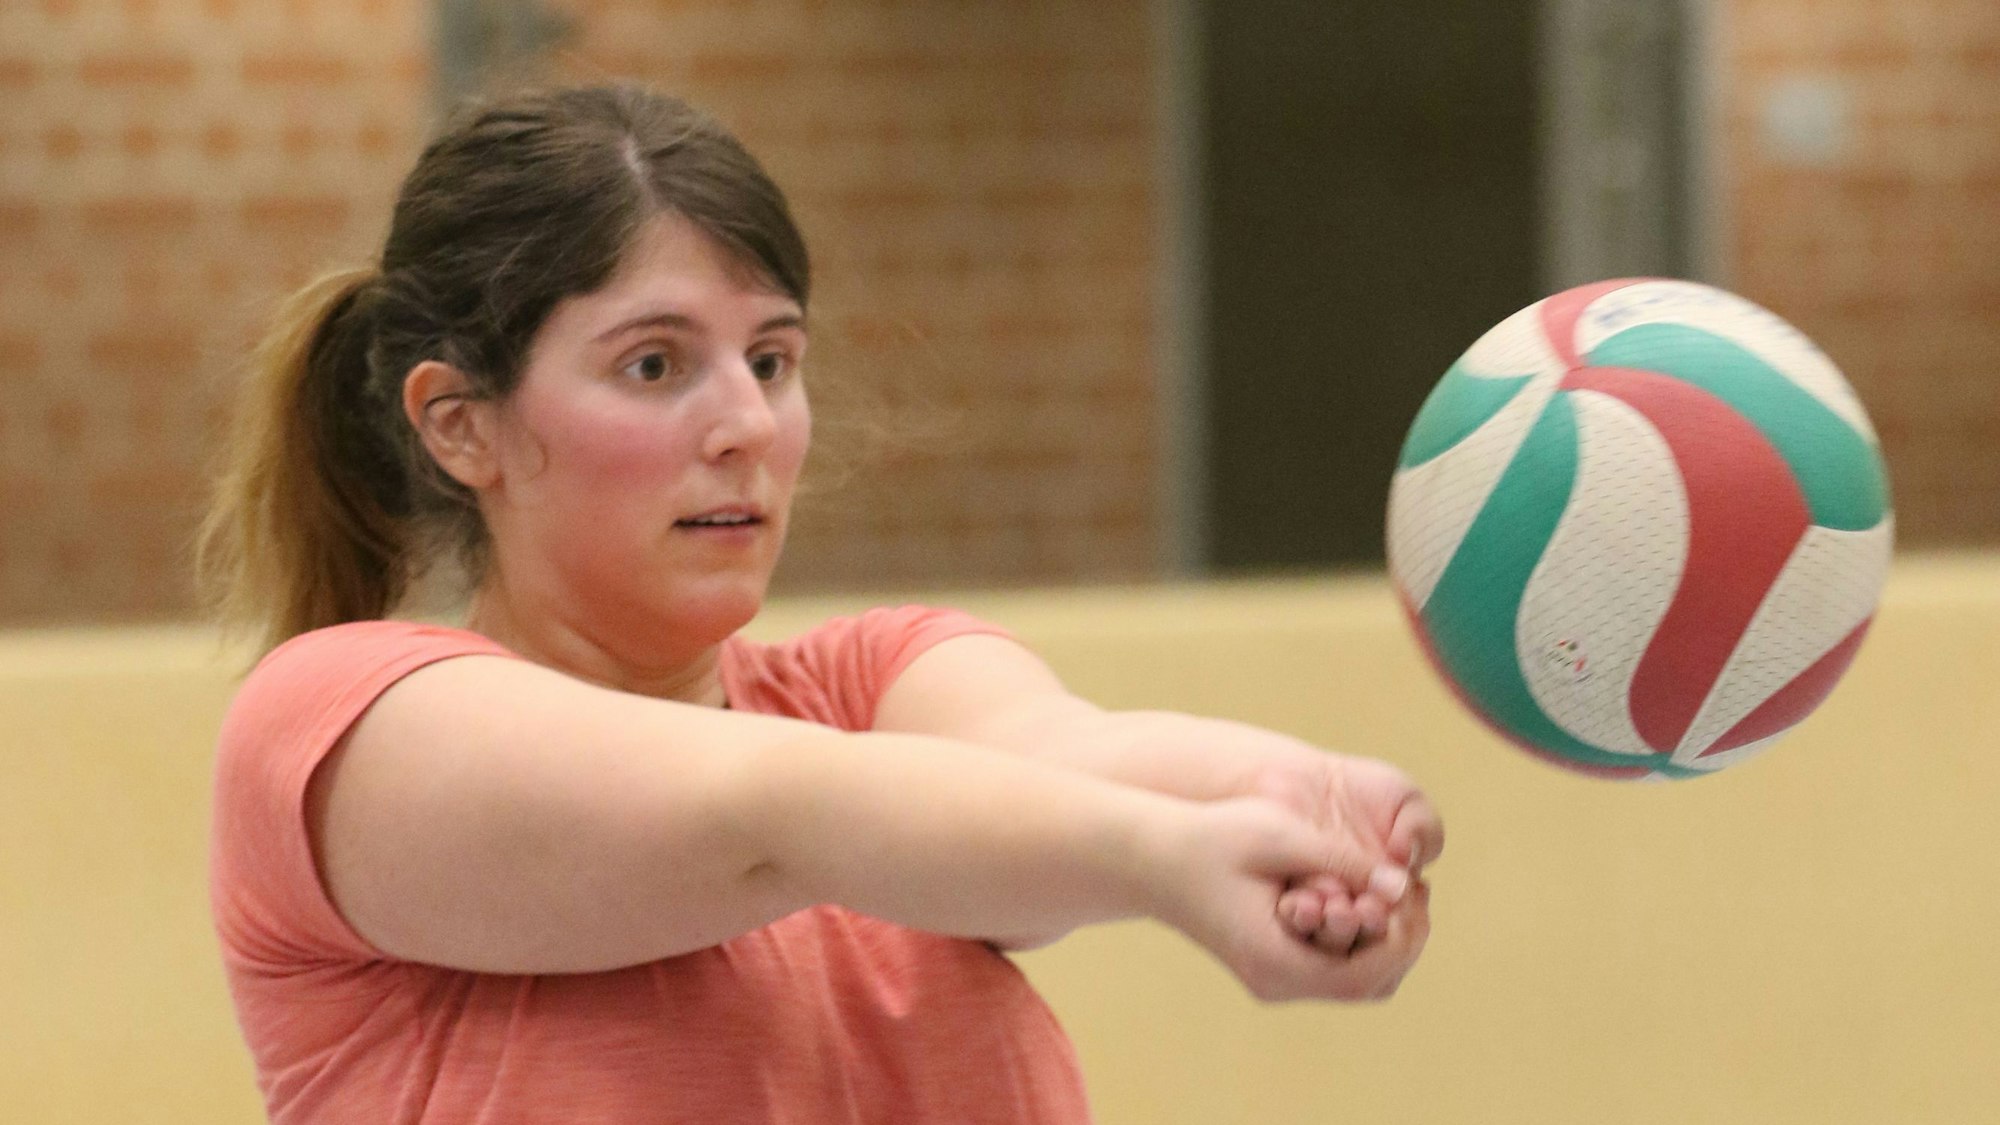 Julia Reuß fokussiert einen Volleyball und hat die Arme zum Baggern ausgestreckt, die Hände sind ineinander geschoben.